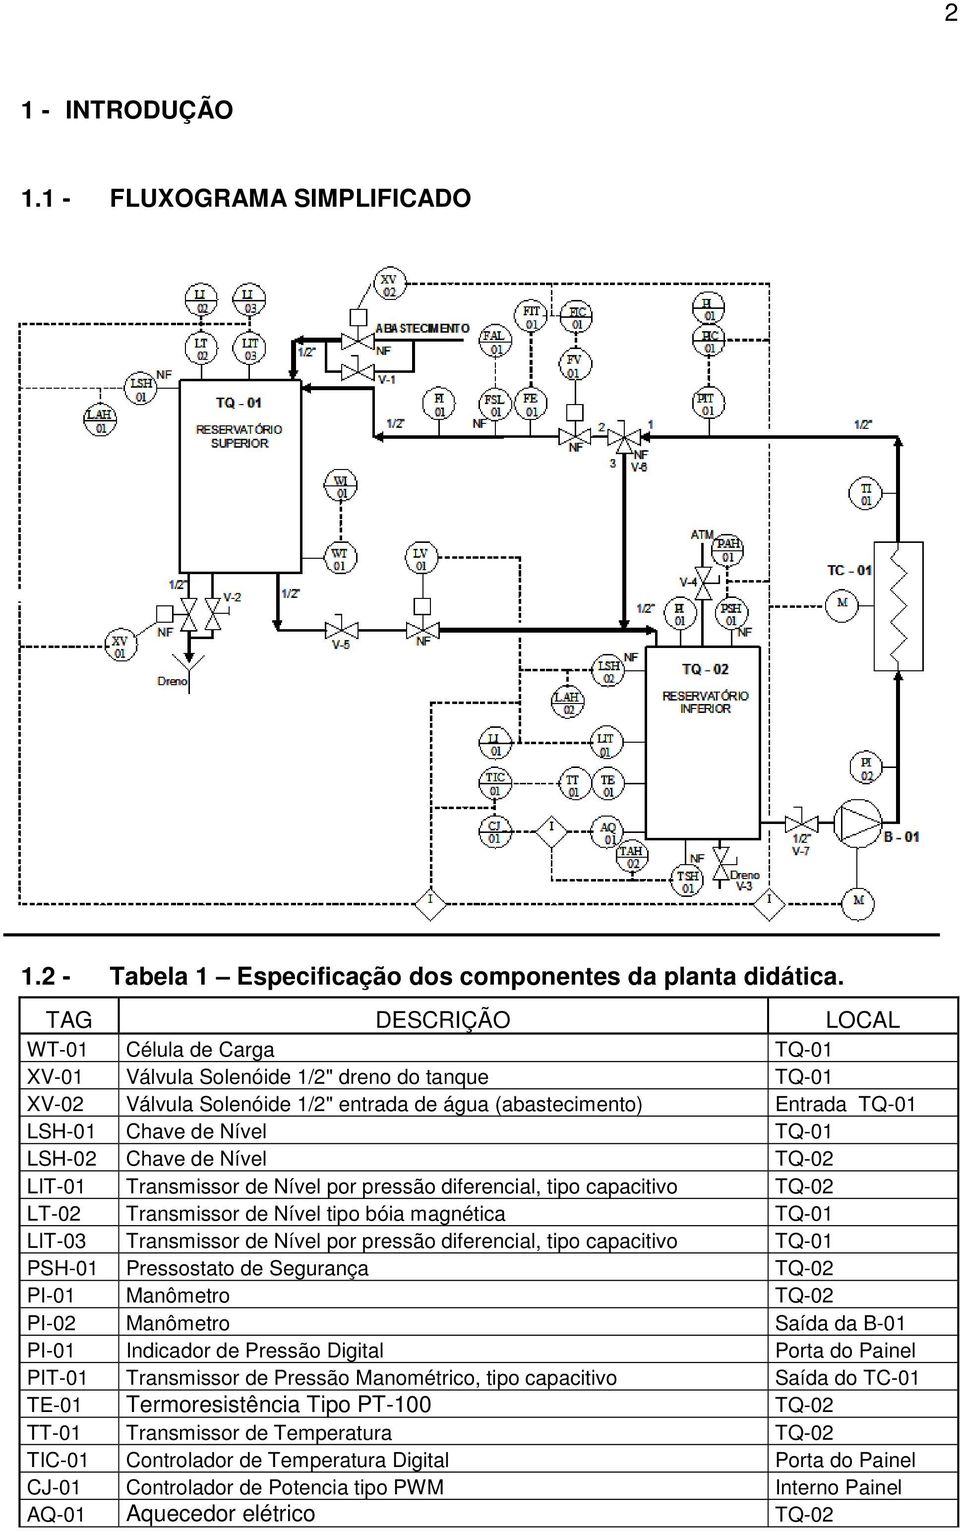 TQ-01 LSH-02 Chave de Nível TQ-02 LIT-01 Transmissor de Nível por pressão diferencial, tipo capacitivo TQ-02 LT-02 Transmissor de Nível tipo bóia magnética TQ-01 LIT-03 Transmissor de Nível por